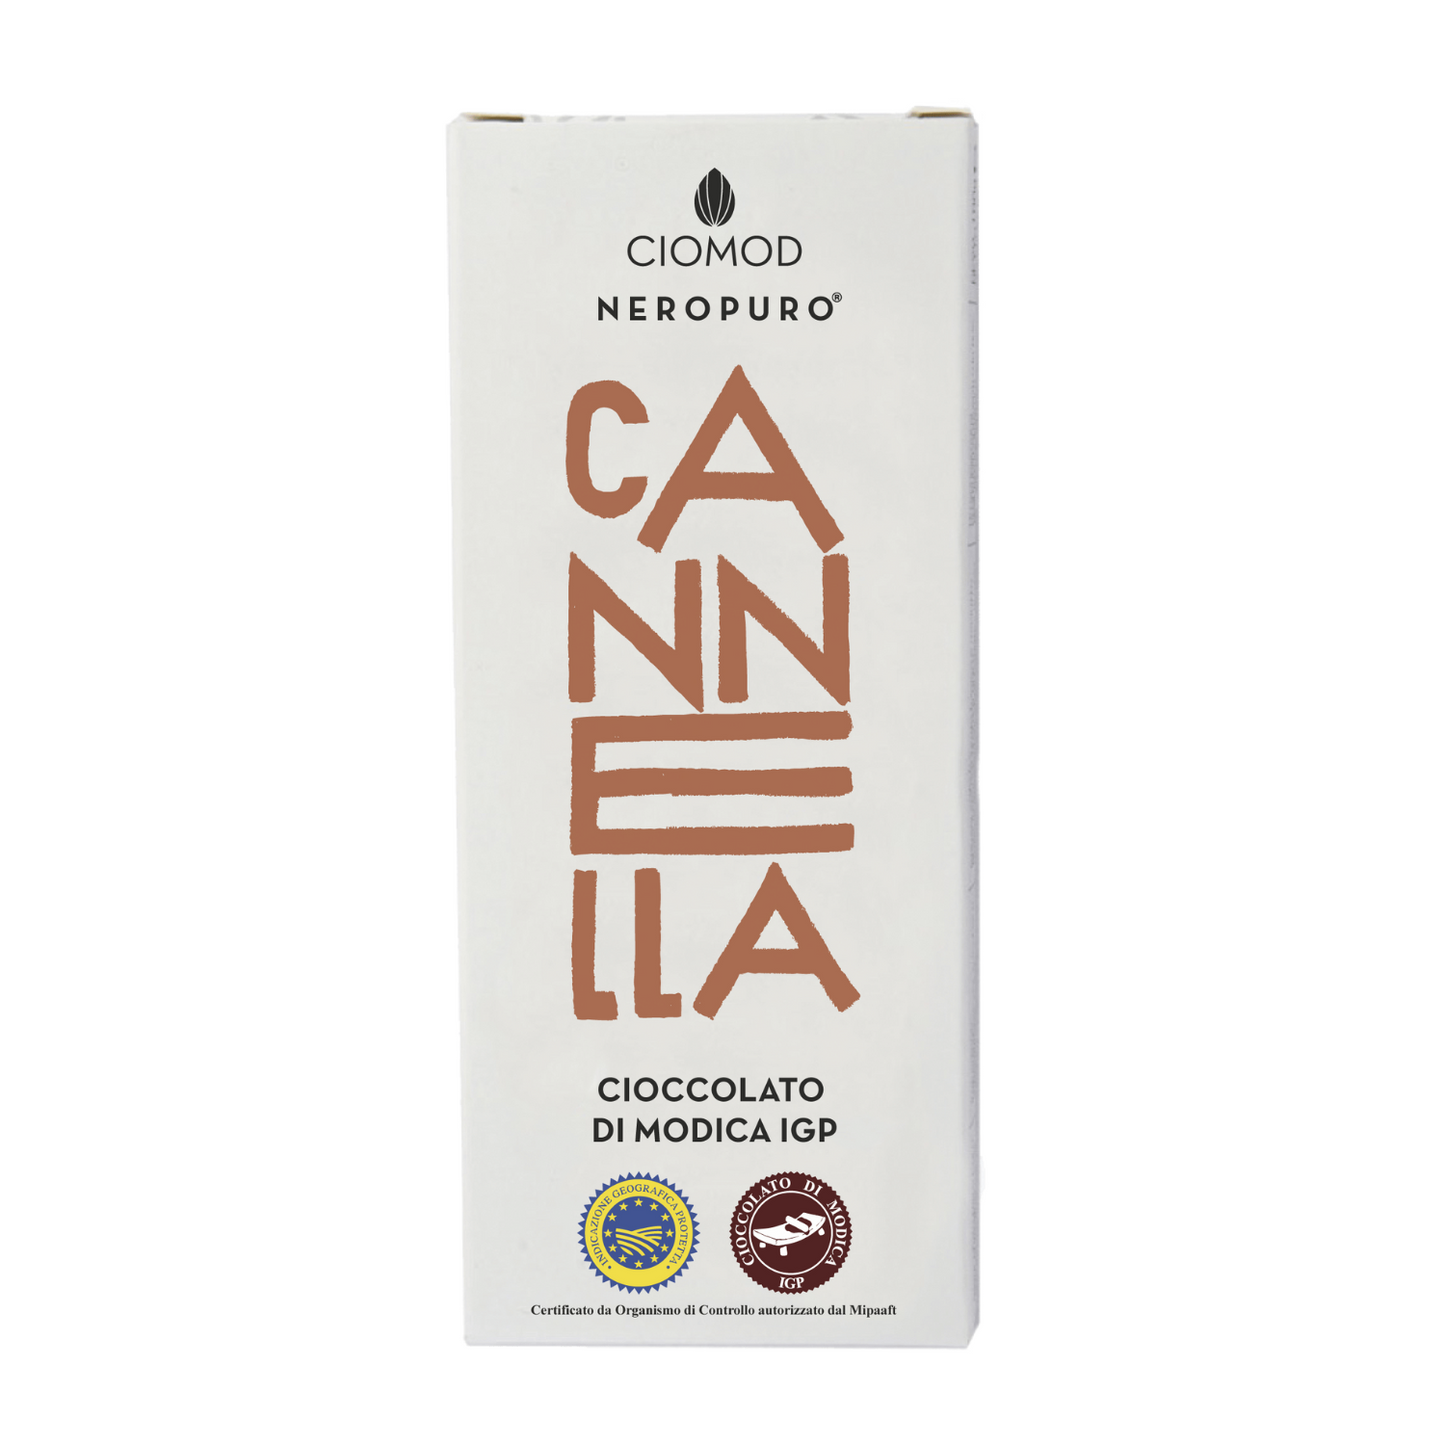 Cioccolato di Modica Igp Cannella - Ciomod